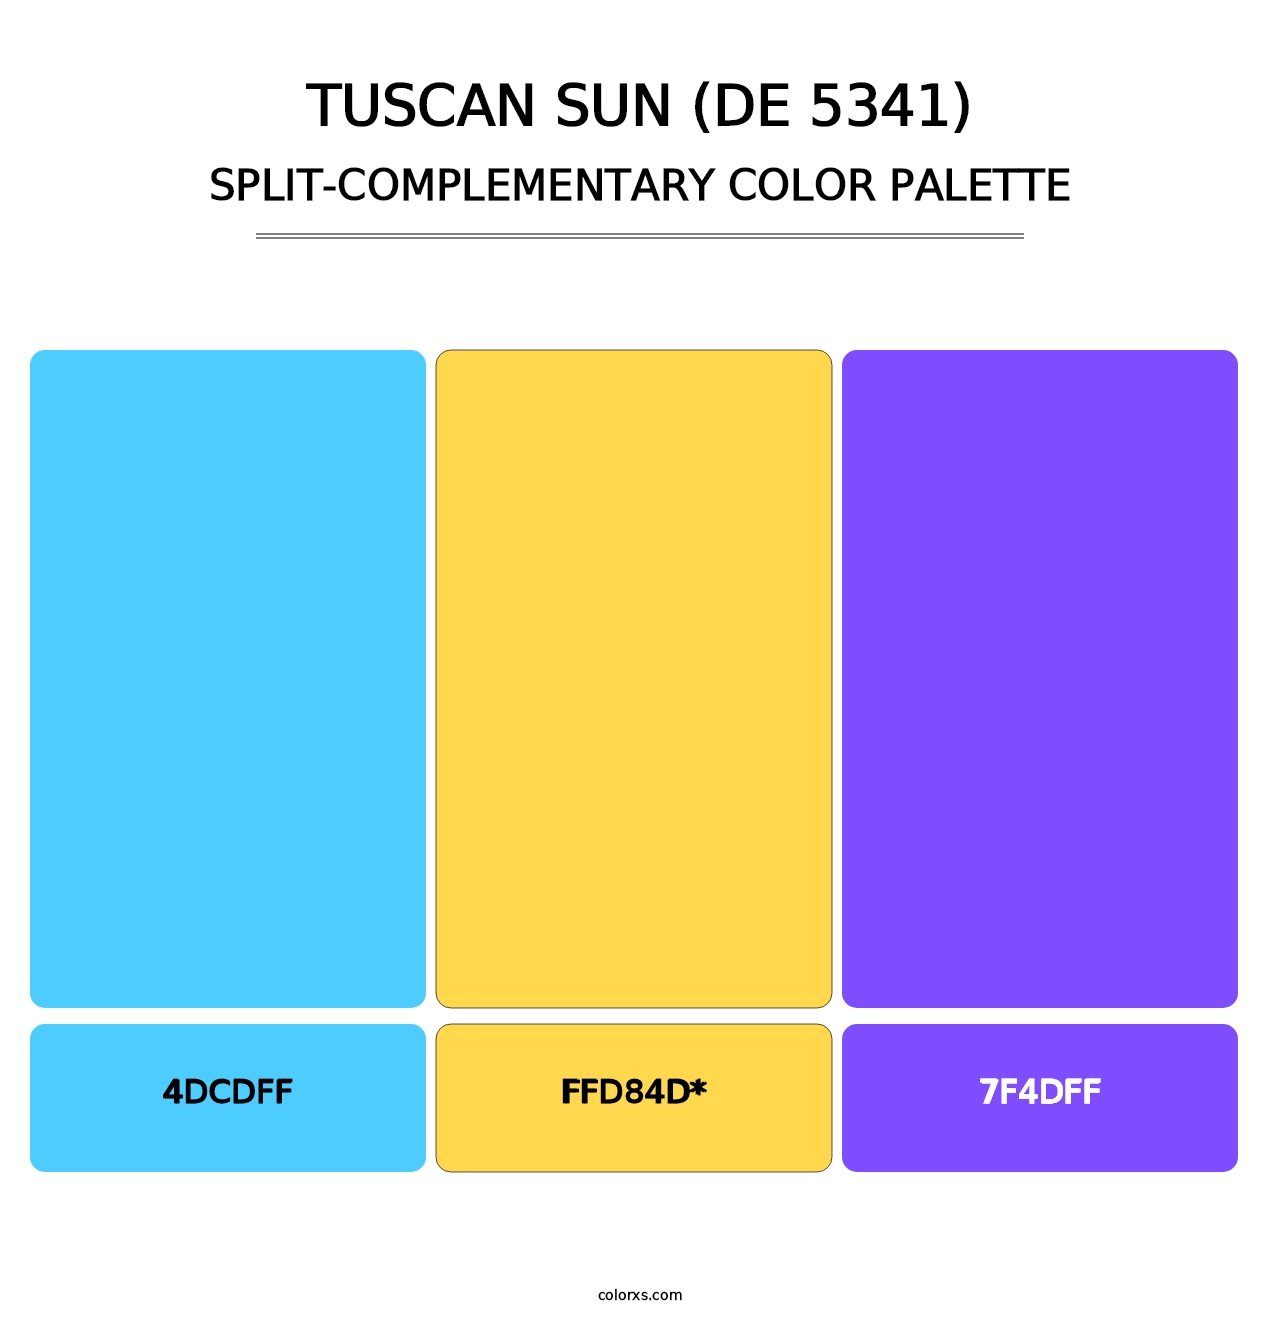 Tuscan Sun (DE 5341) - Split-Complementary Color Palette